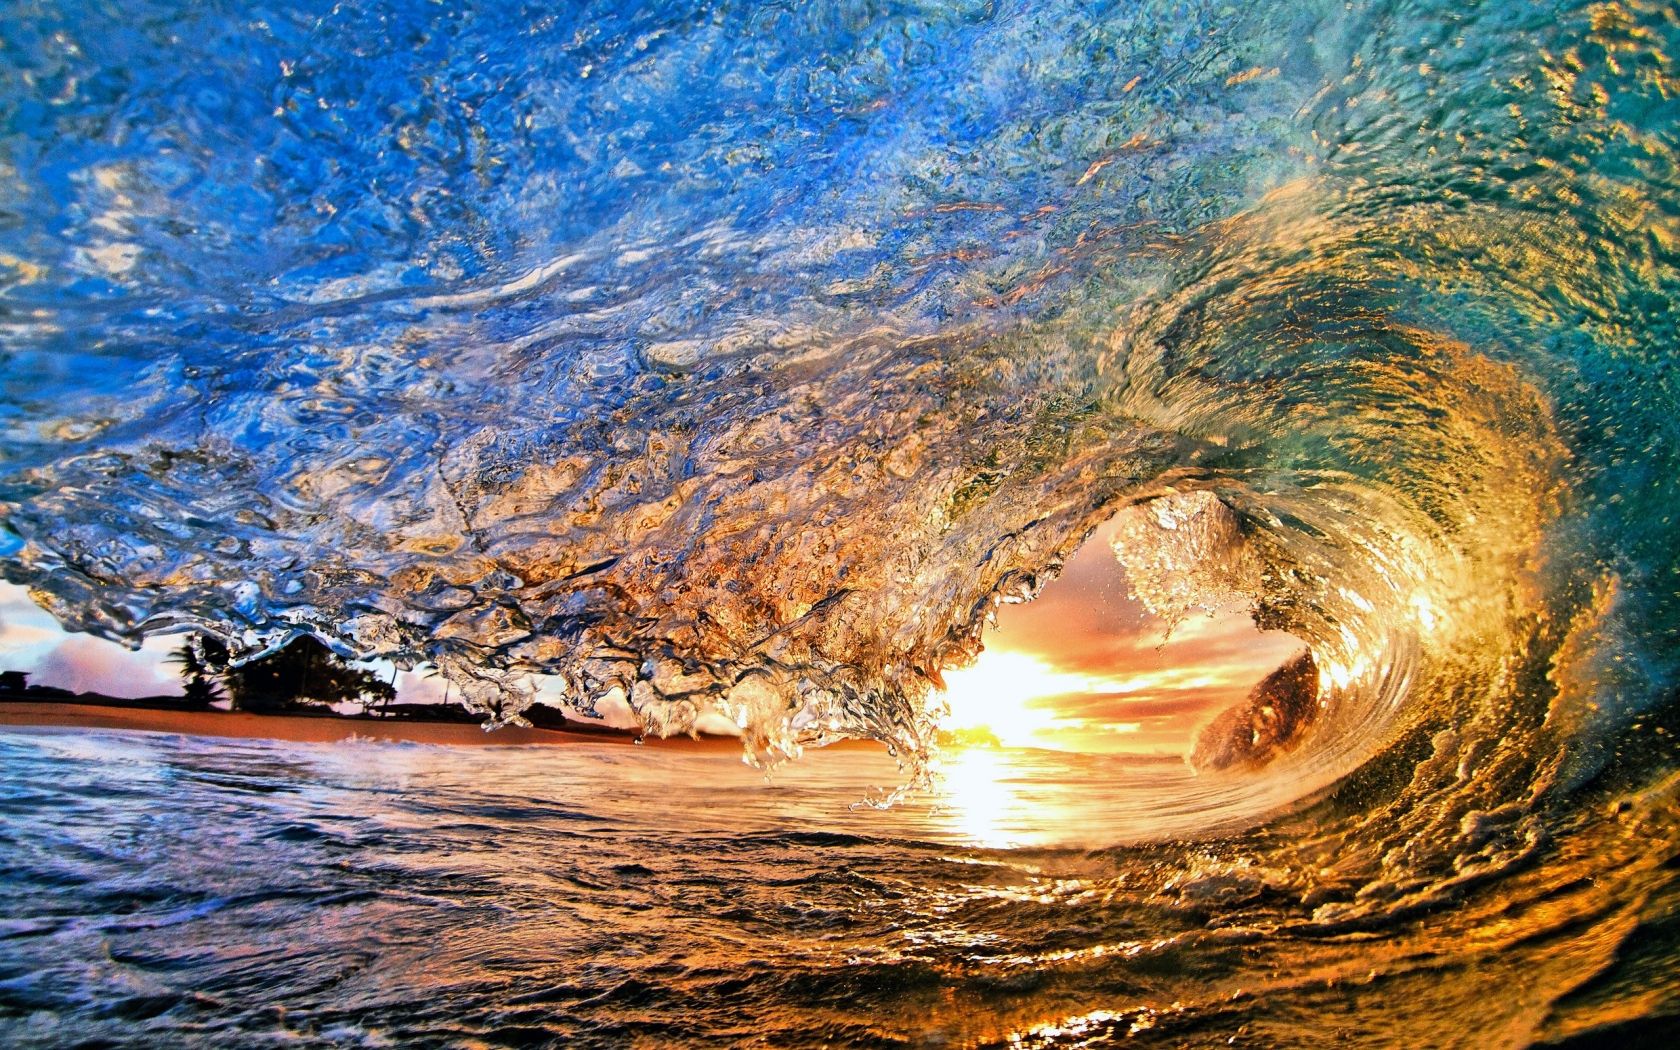 Download Cool 3D Water Texture In Ocean Wallpaper | Wallpapers.com